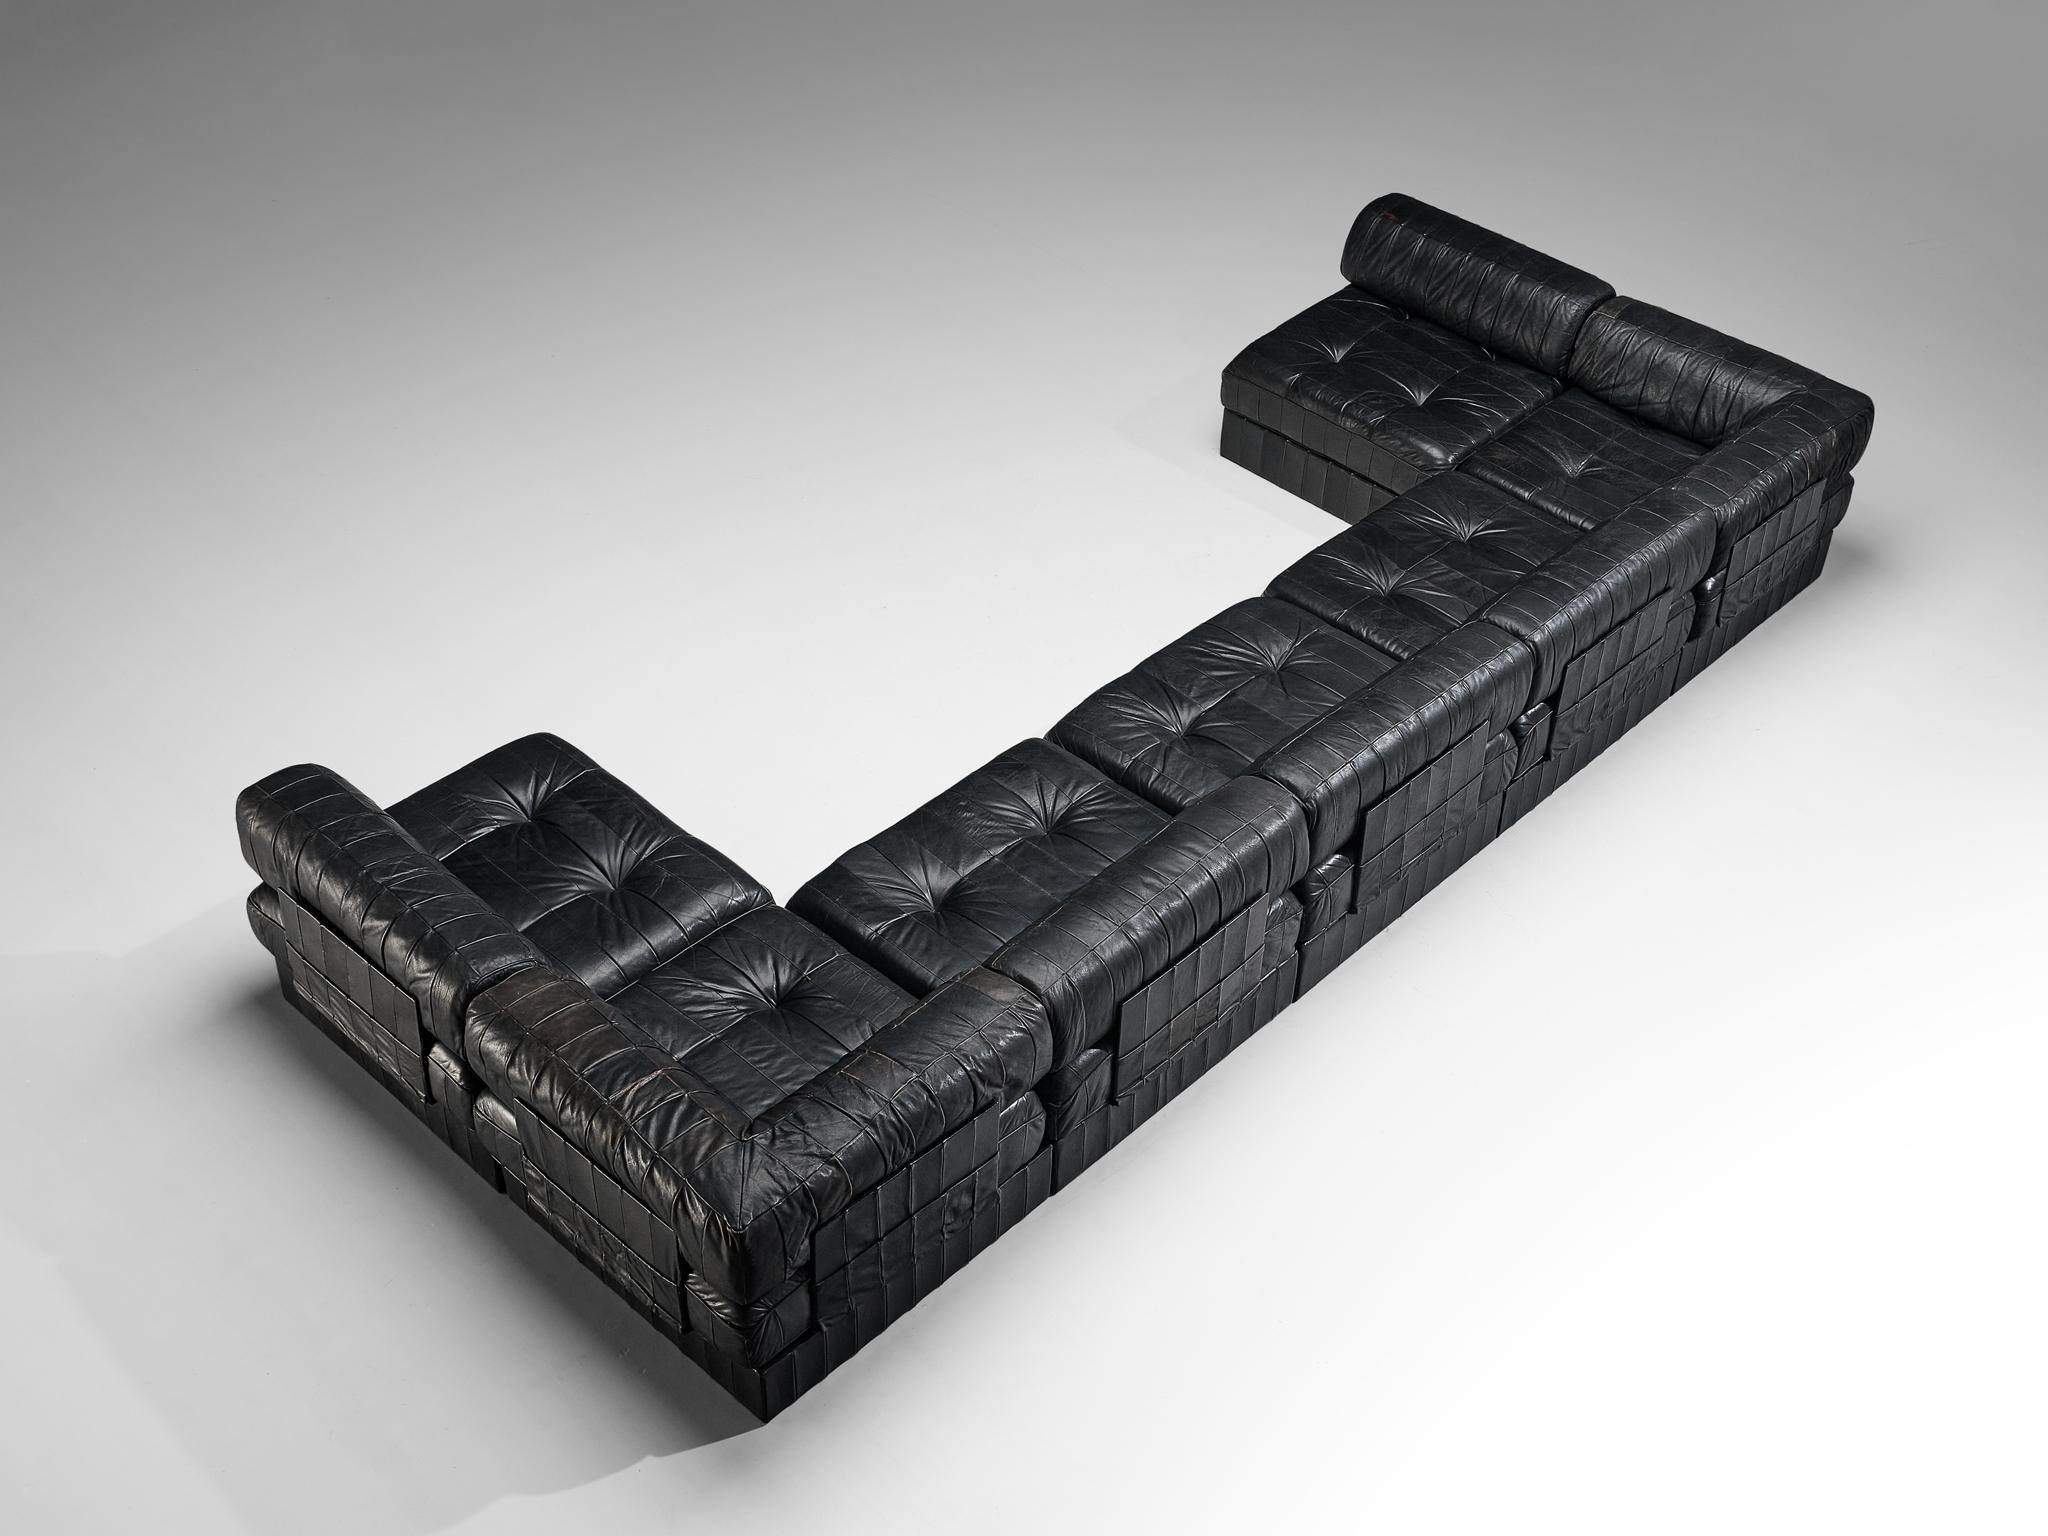 De Sede, canapé sectionnel 'DS-88', cuir noir, Suisse, années 1970. 

Ce grand canapé sectionnel, conçu par De Sede dans les années 1970, comporte deux éléments d'angle et cinq éléments réguliers. Cet ensemble devient très polyvalent car il permet